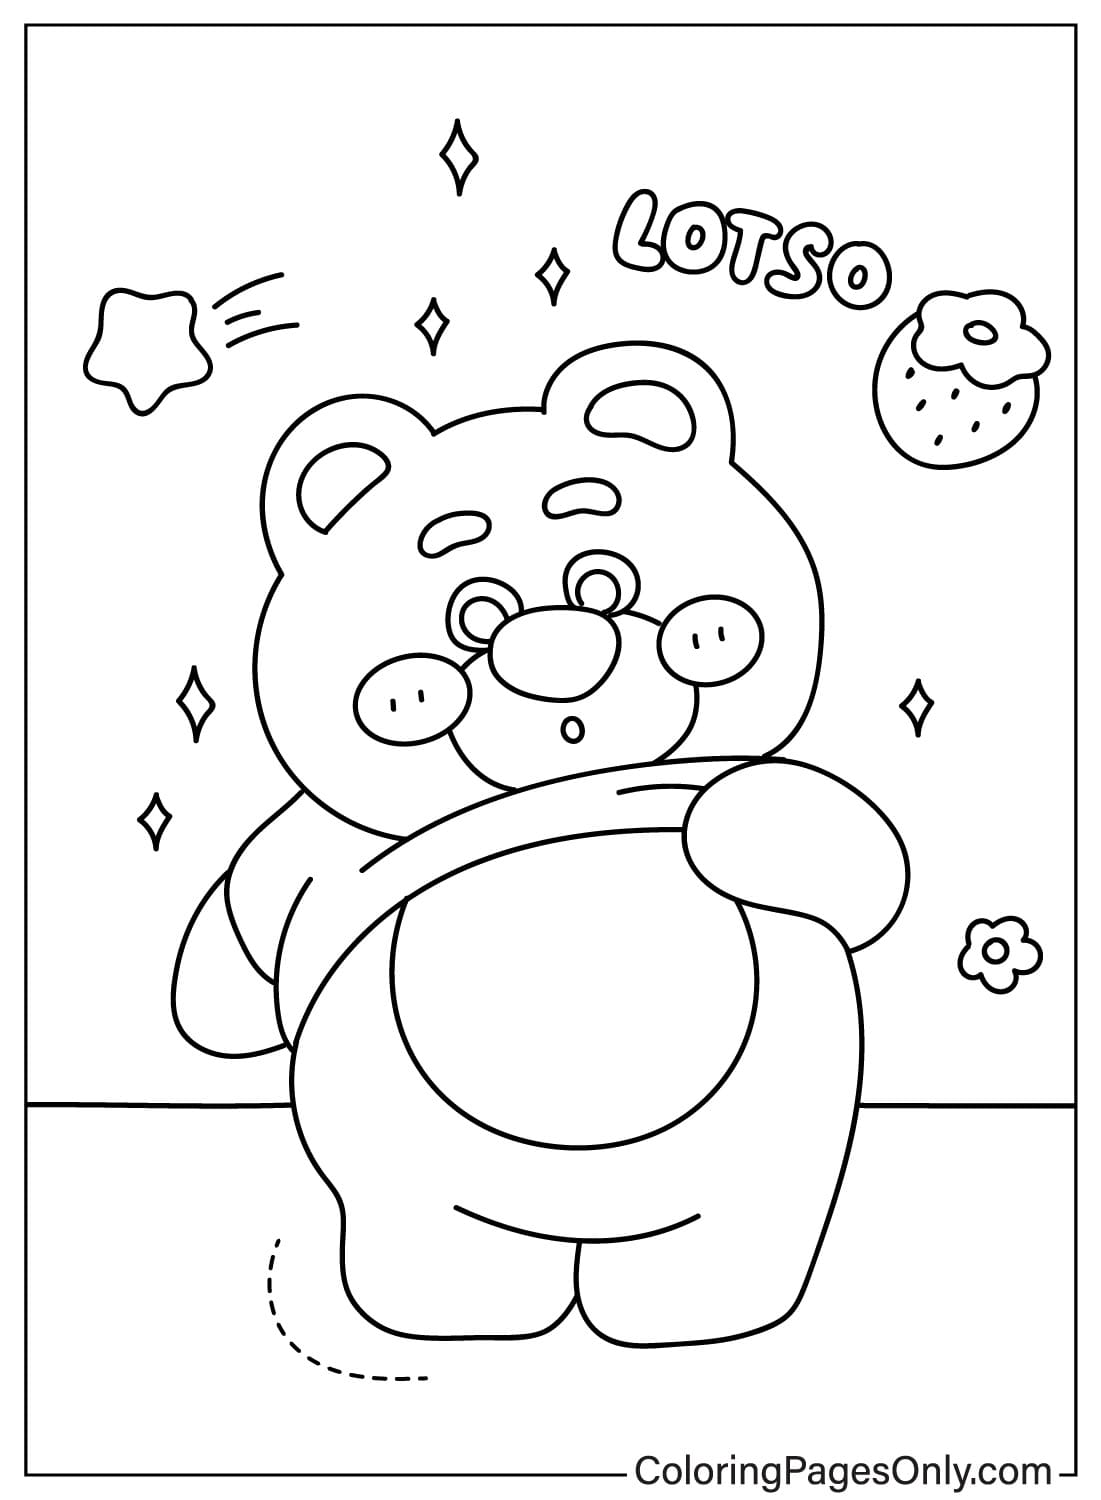 Imágenes del Oso Lotso para colorear de Lotso Bear